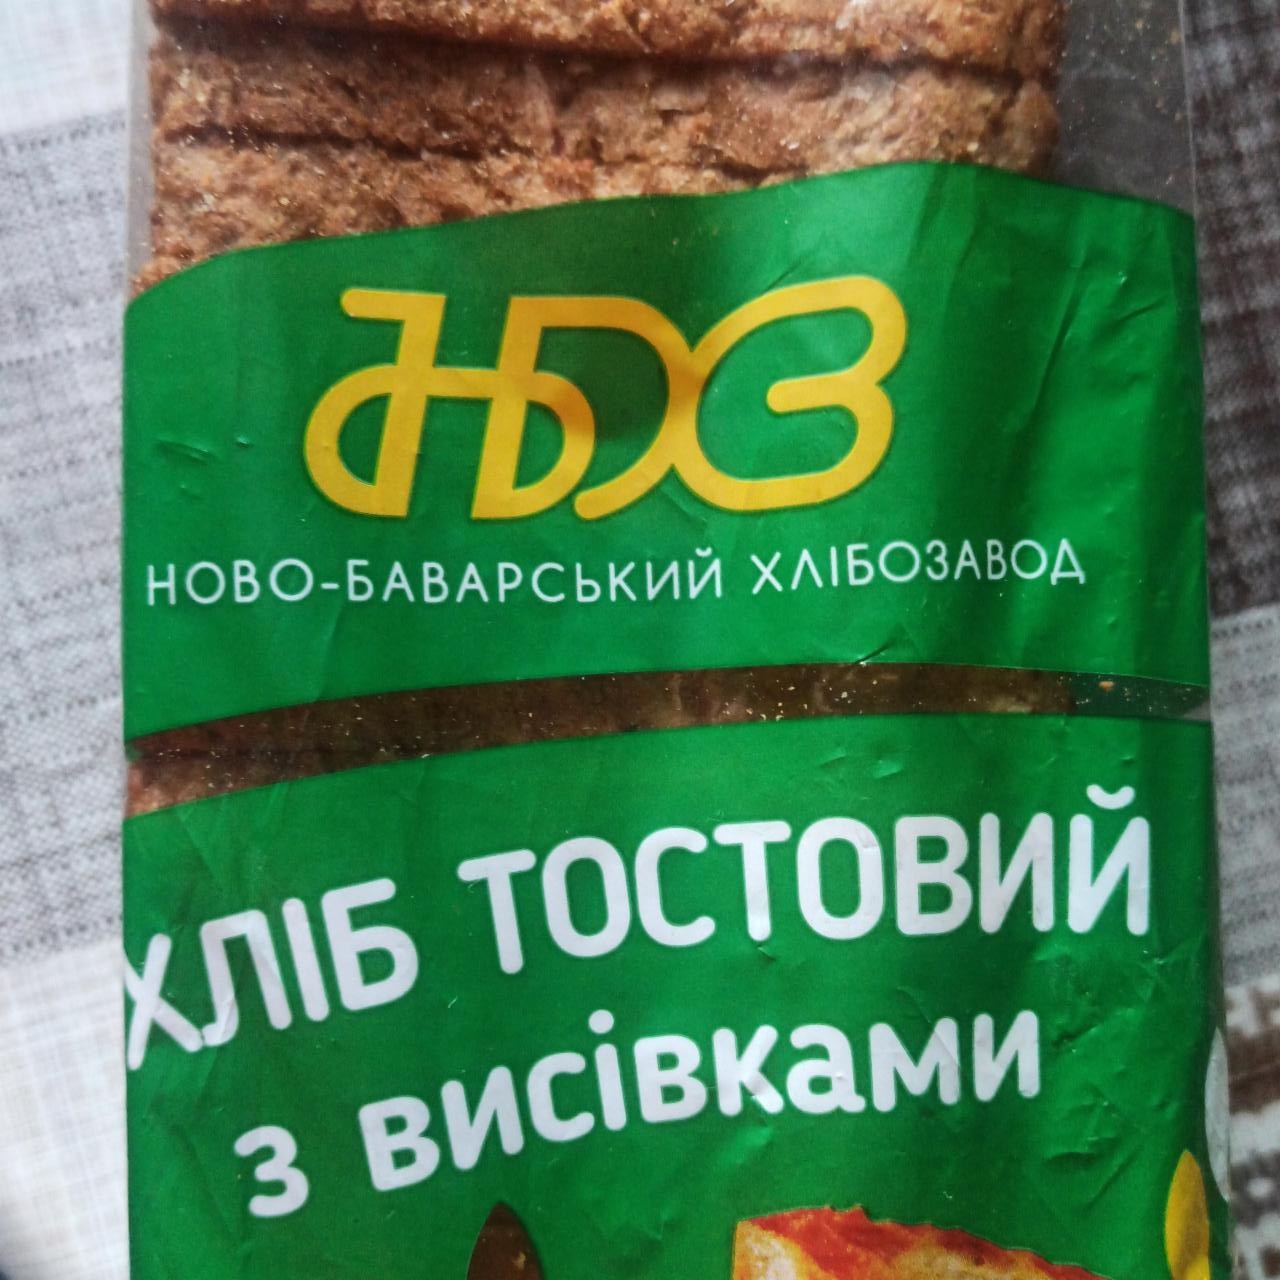 Фото - Хлеб тостовый с отрубями Ново-Баварский хлебозавод